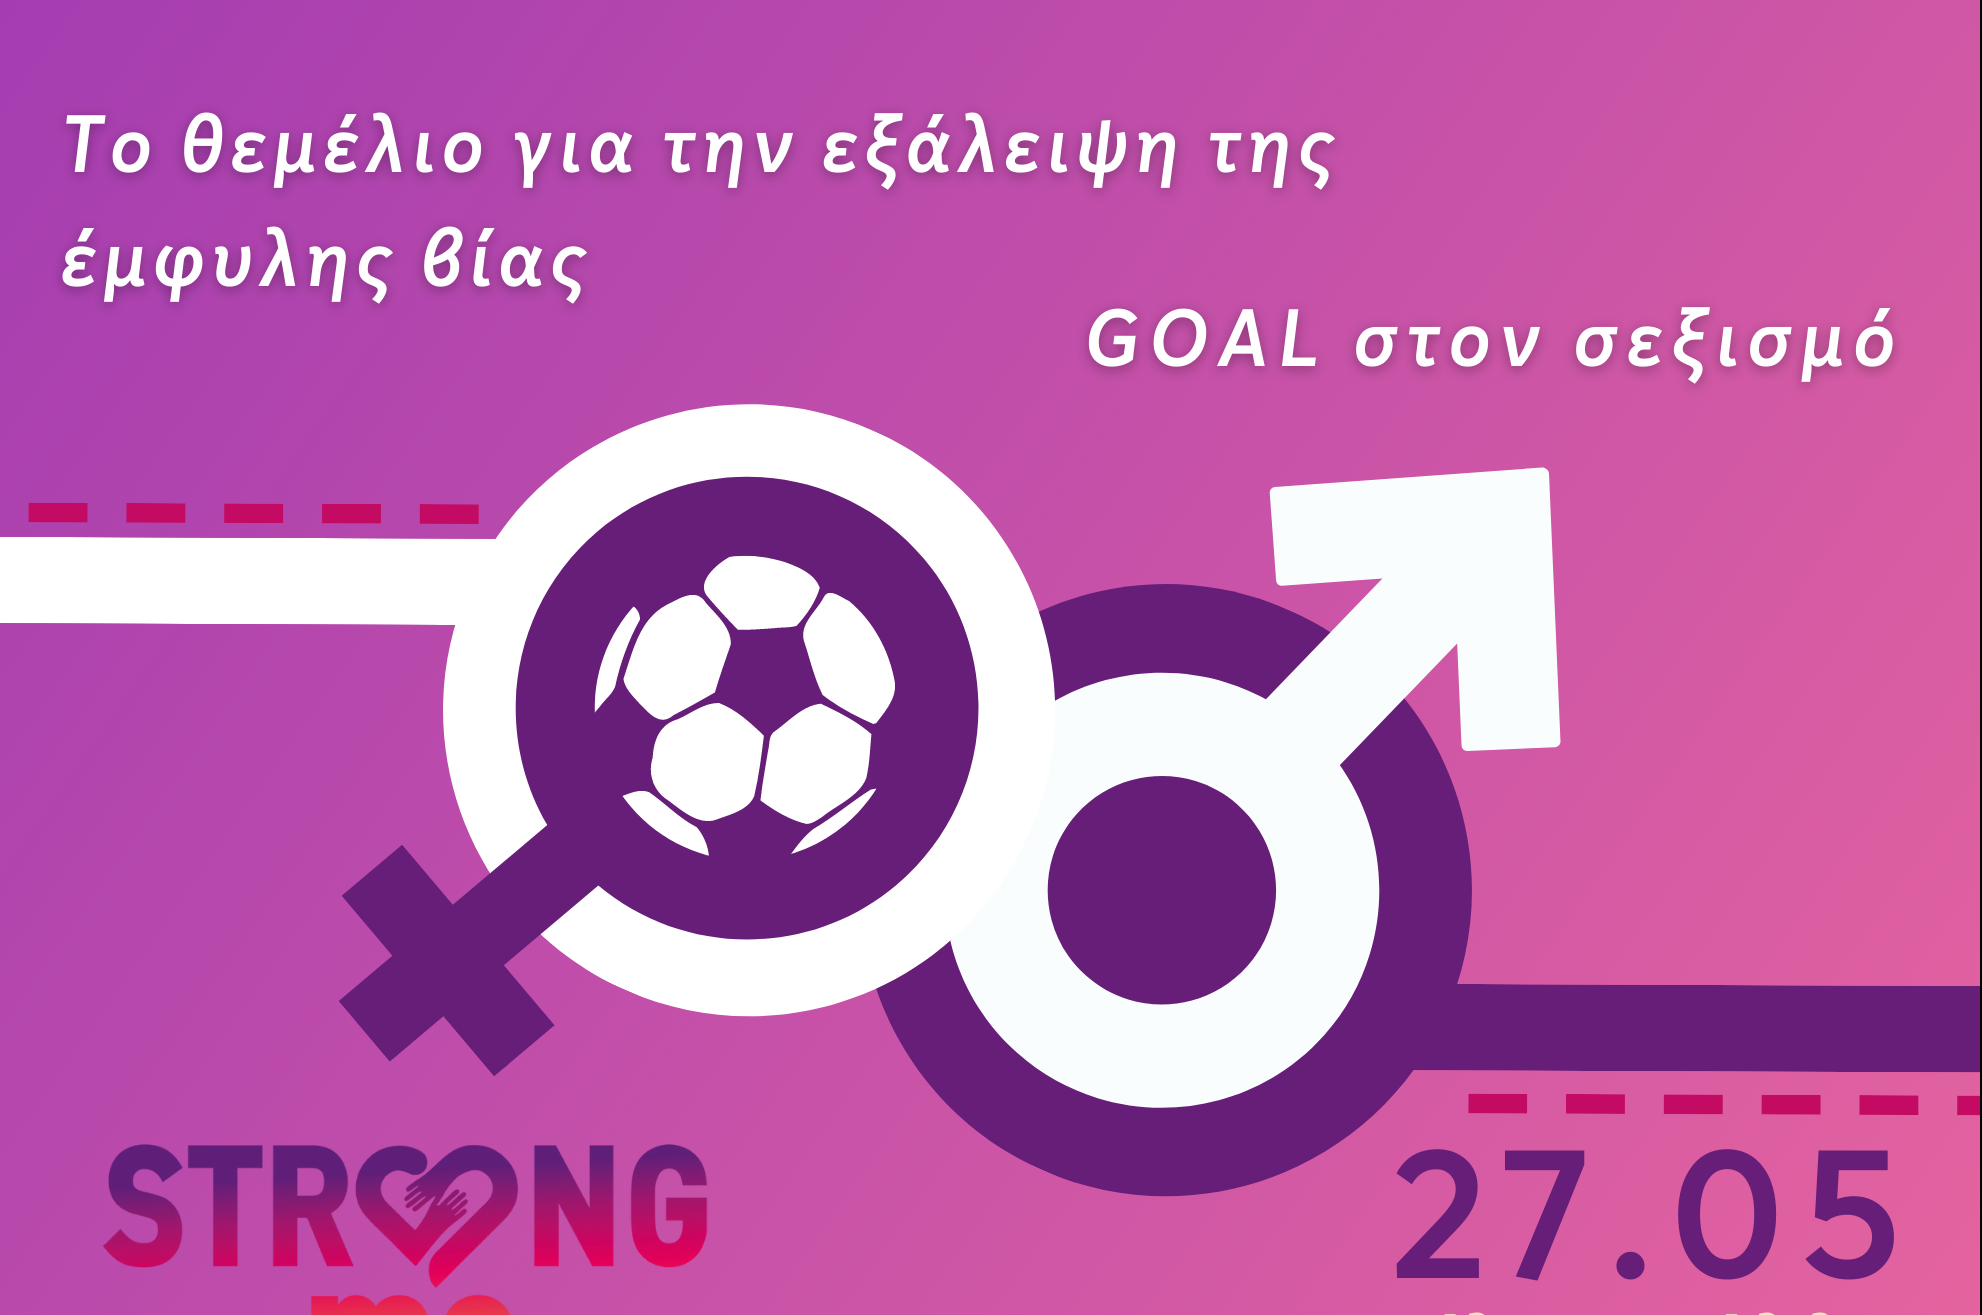 Goal στον Σεξισμό: Διήμερο δράσεων για την ισότητα και την εξάλειψη της έμφυλης βίας από τον Δήμο Ηρακλείου Αττικής και το Strong Me